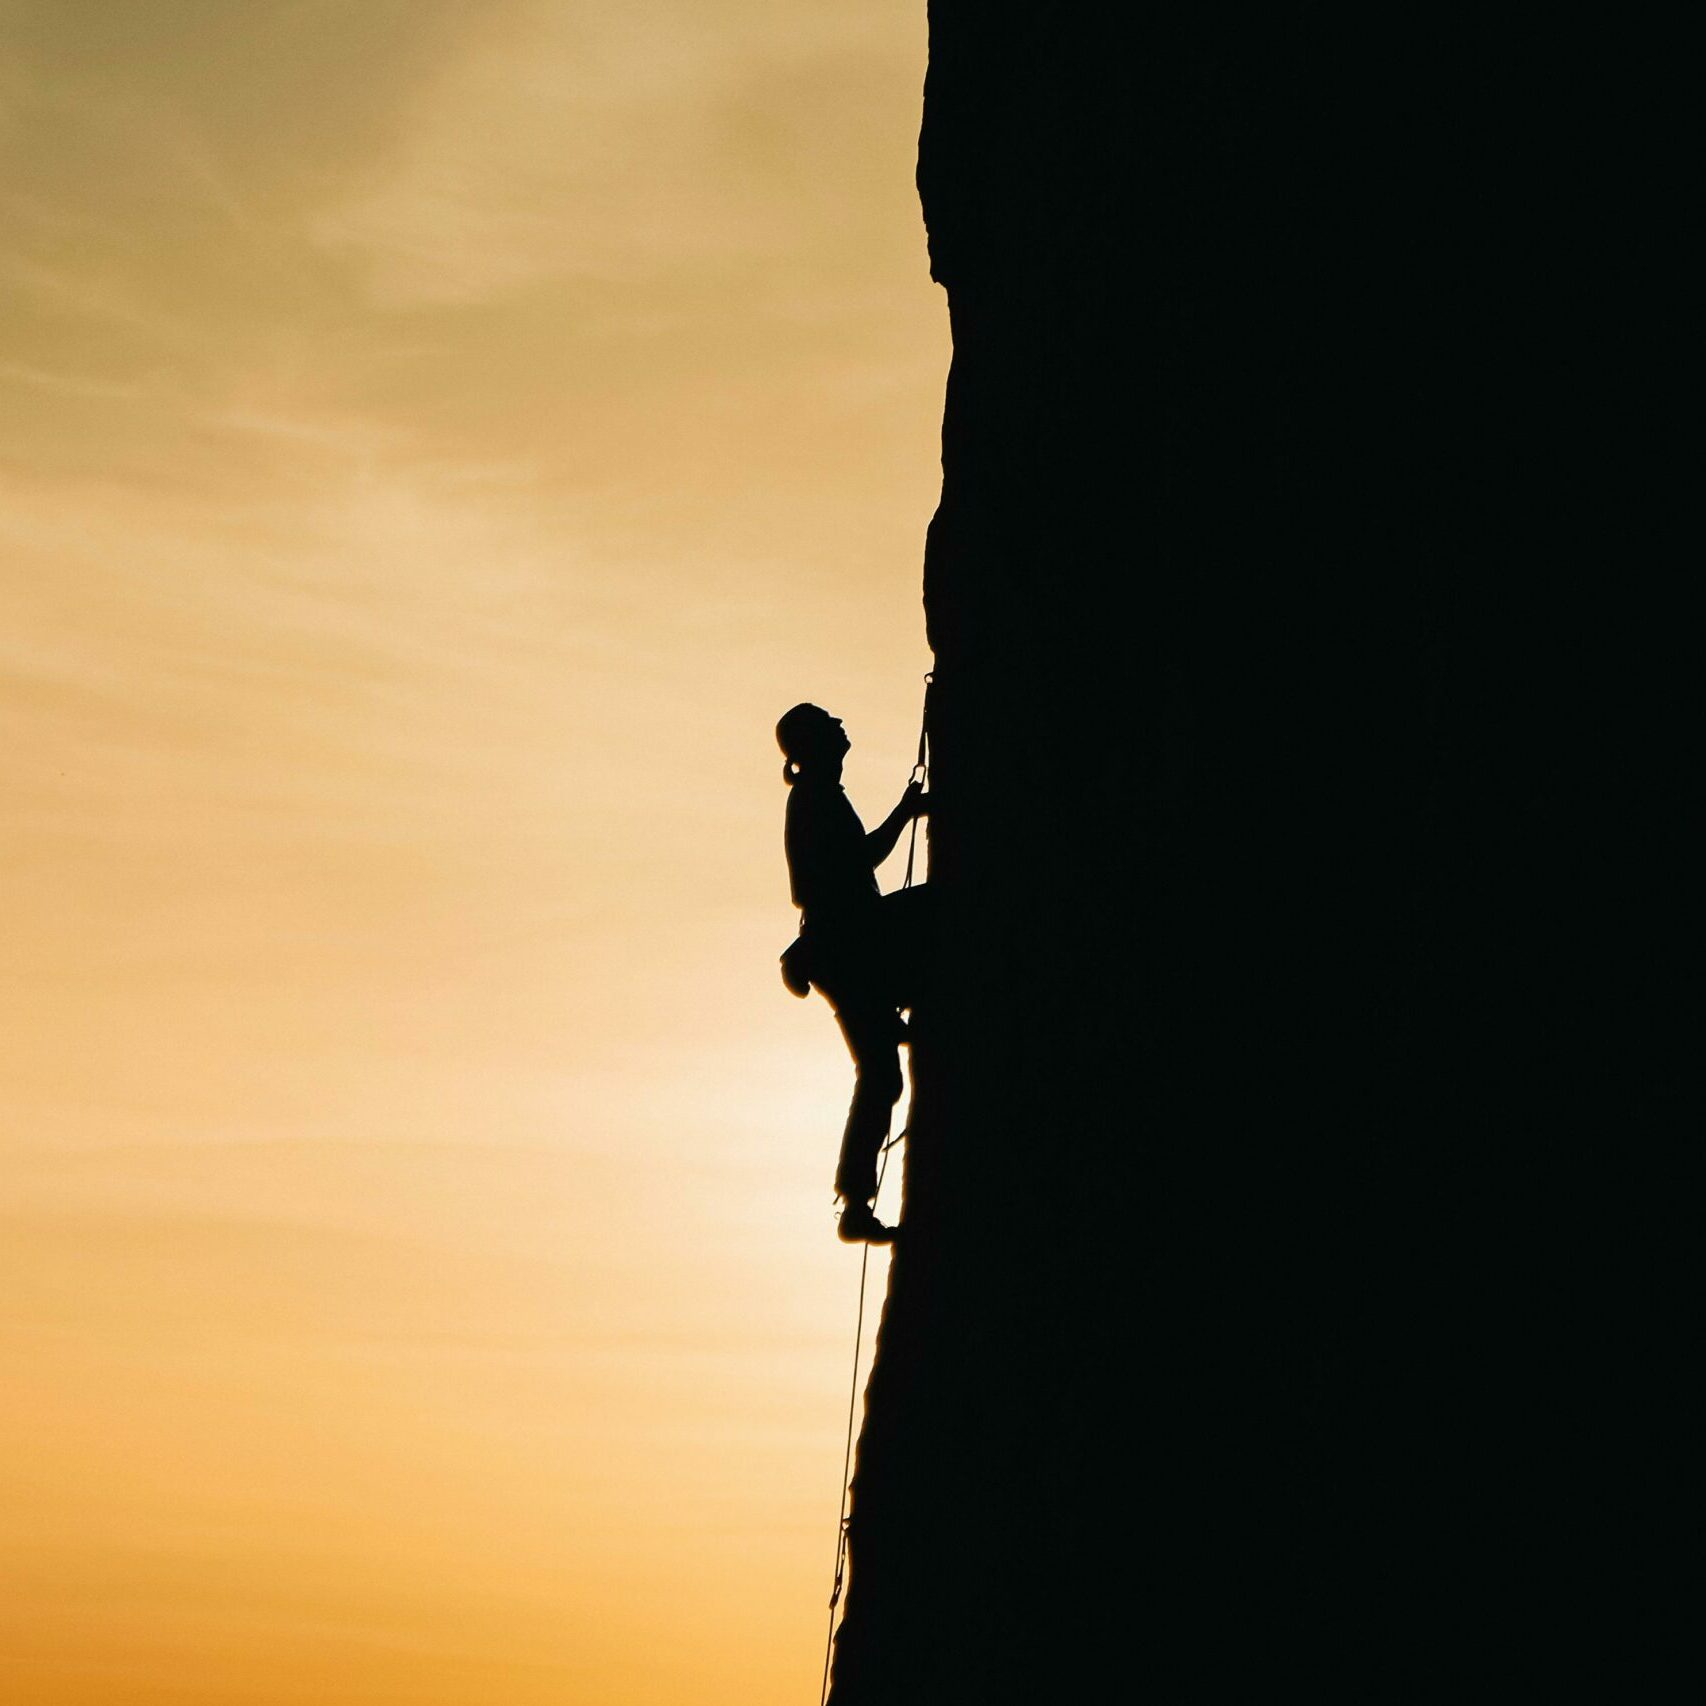 Persona arrampica su parete rocciosa con attrezzature da arrampicata, suggerendo un'esperienza avventurosa per gli amanti delle attività all'aperto.